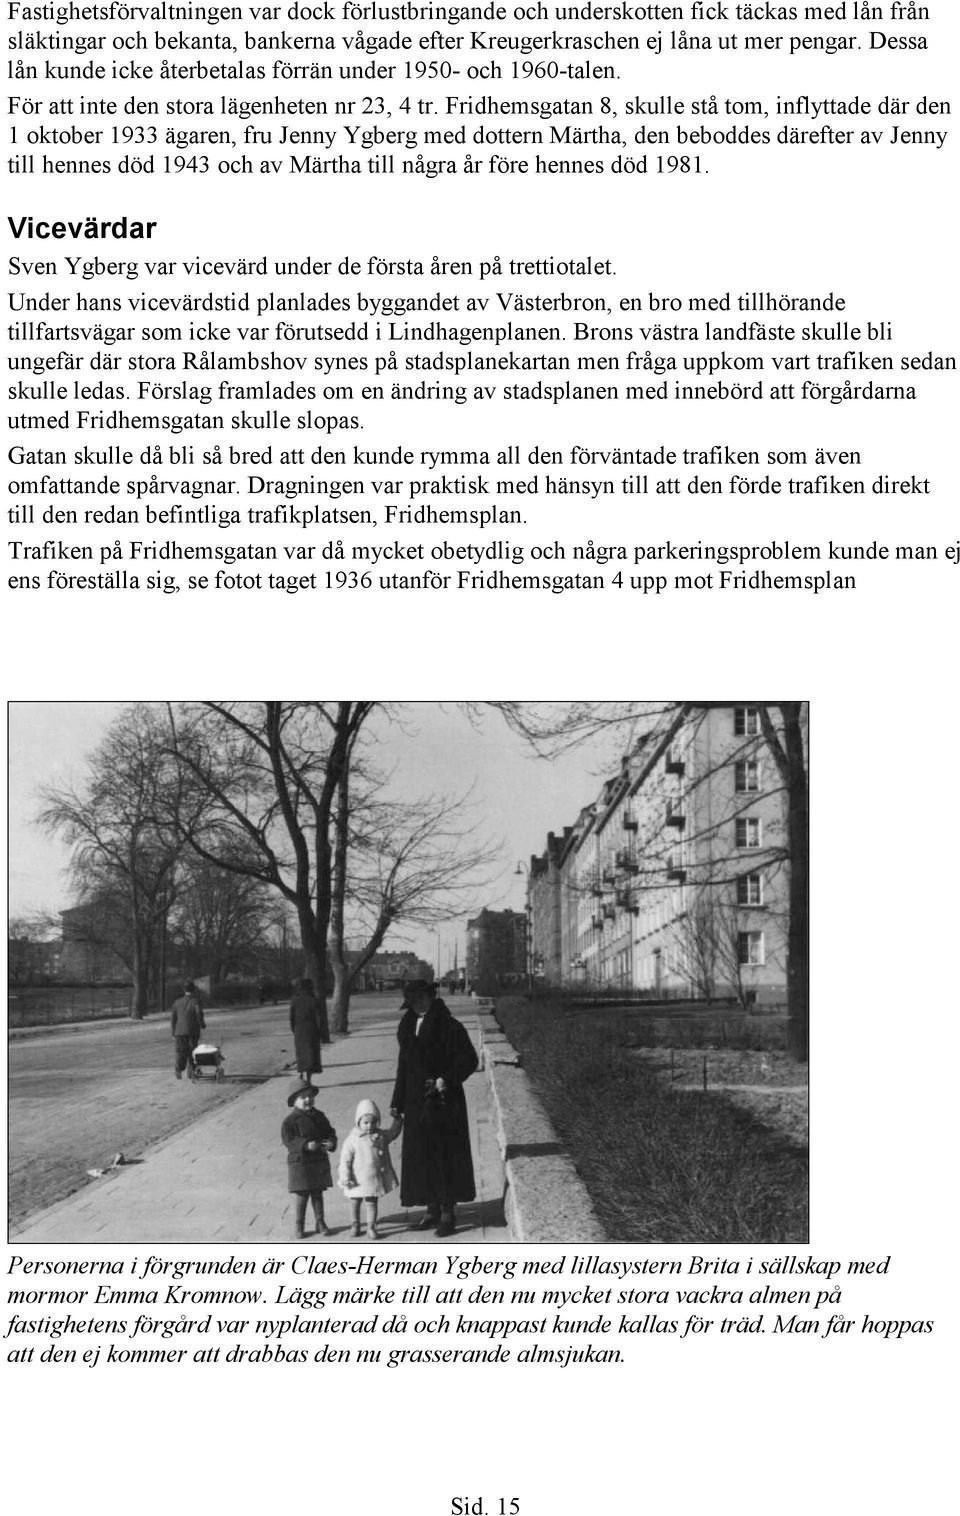 Fridhemsgatan 8, skulle stå tom, inflyttade där den 1 oktober 1933 ägaren, fru Jenny Ygberg med dottern Märtha, den beboddes därefter av Jenny till hennes död 1943 och av Märtha till några år före